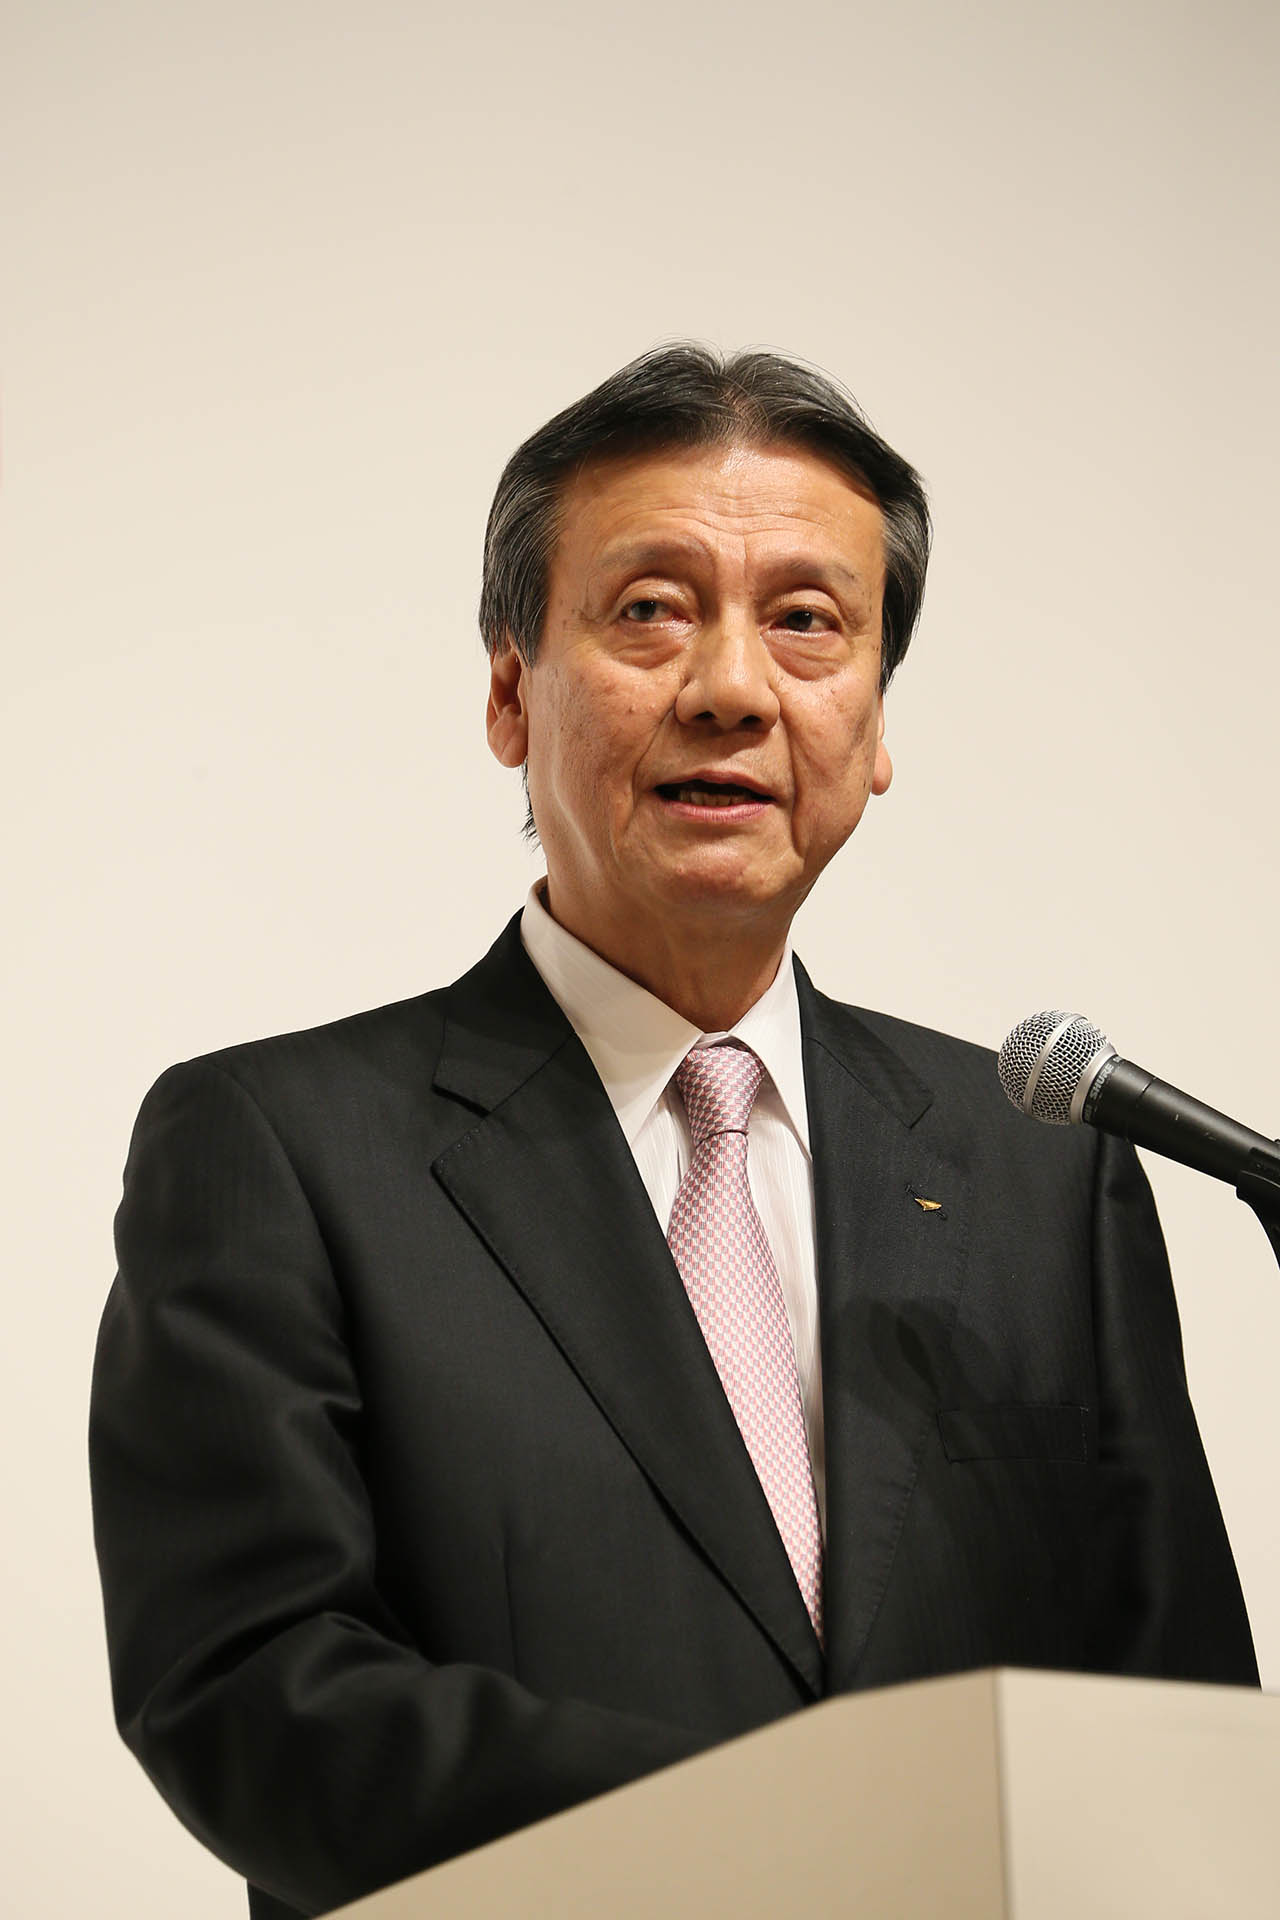 Daihatsu President Masanori Mitsui